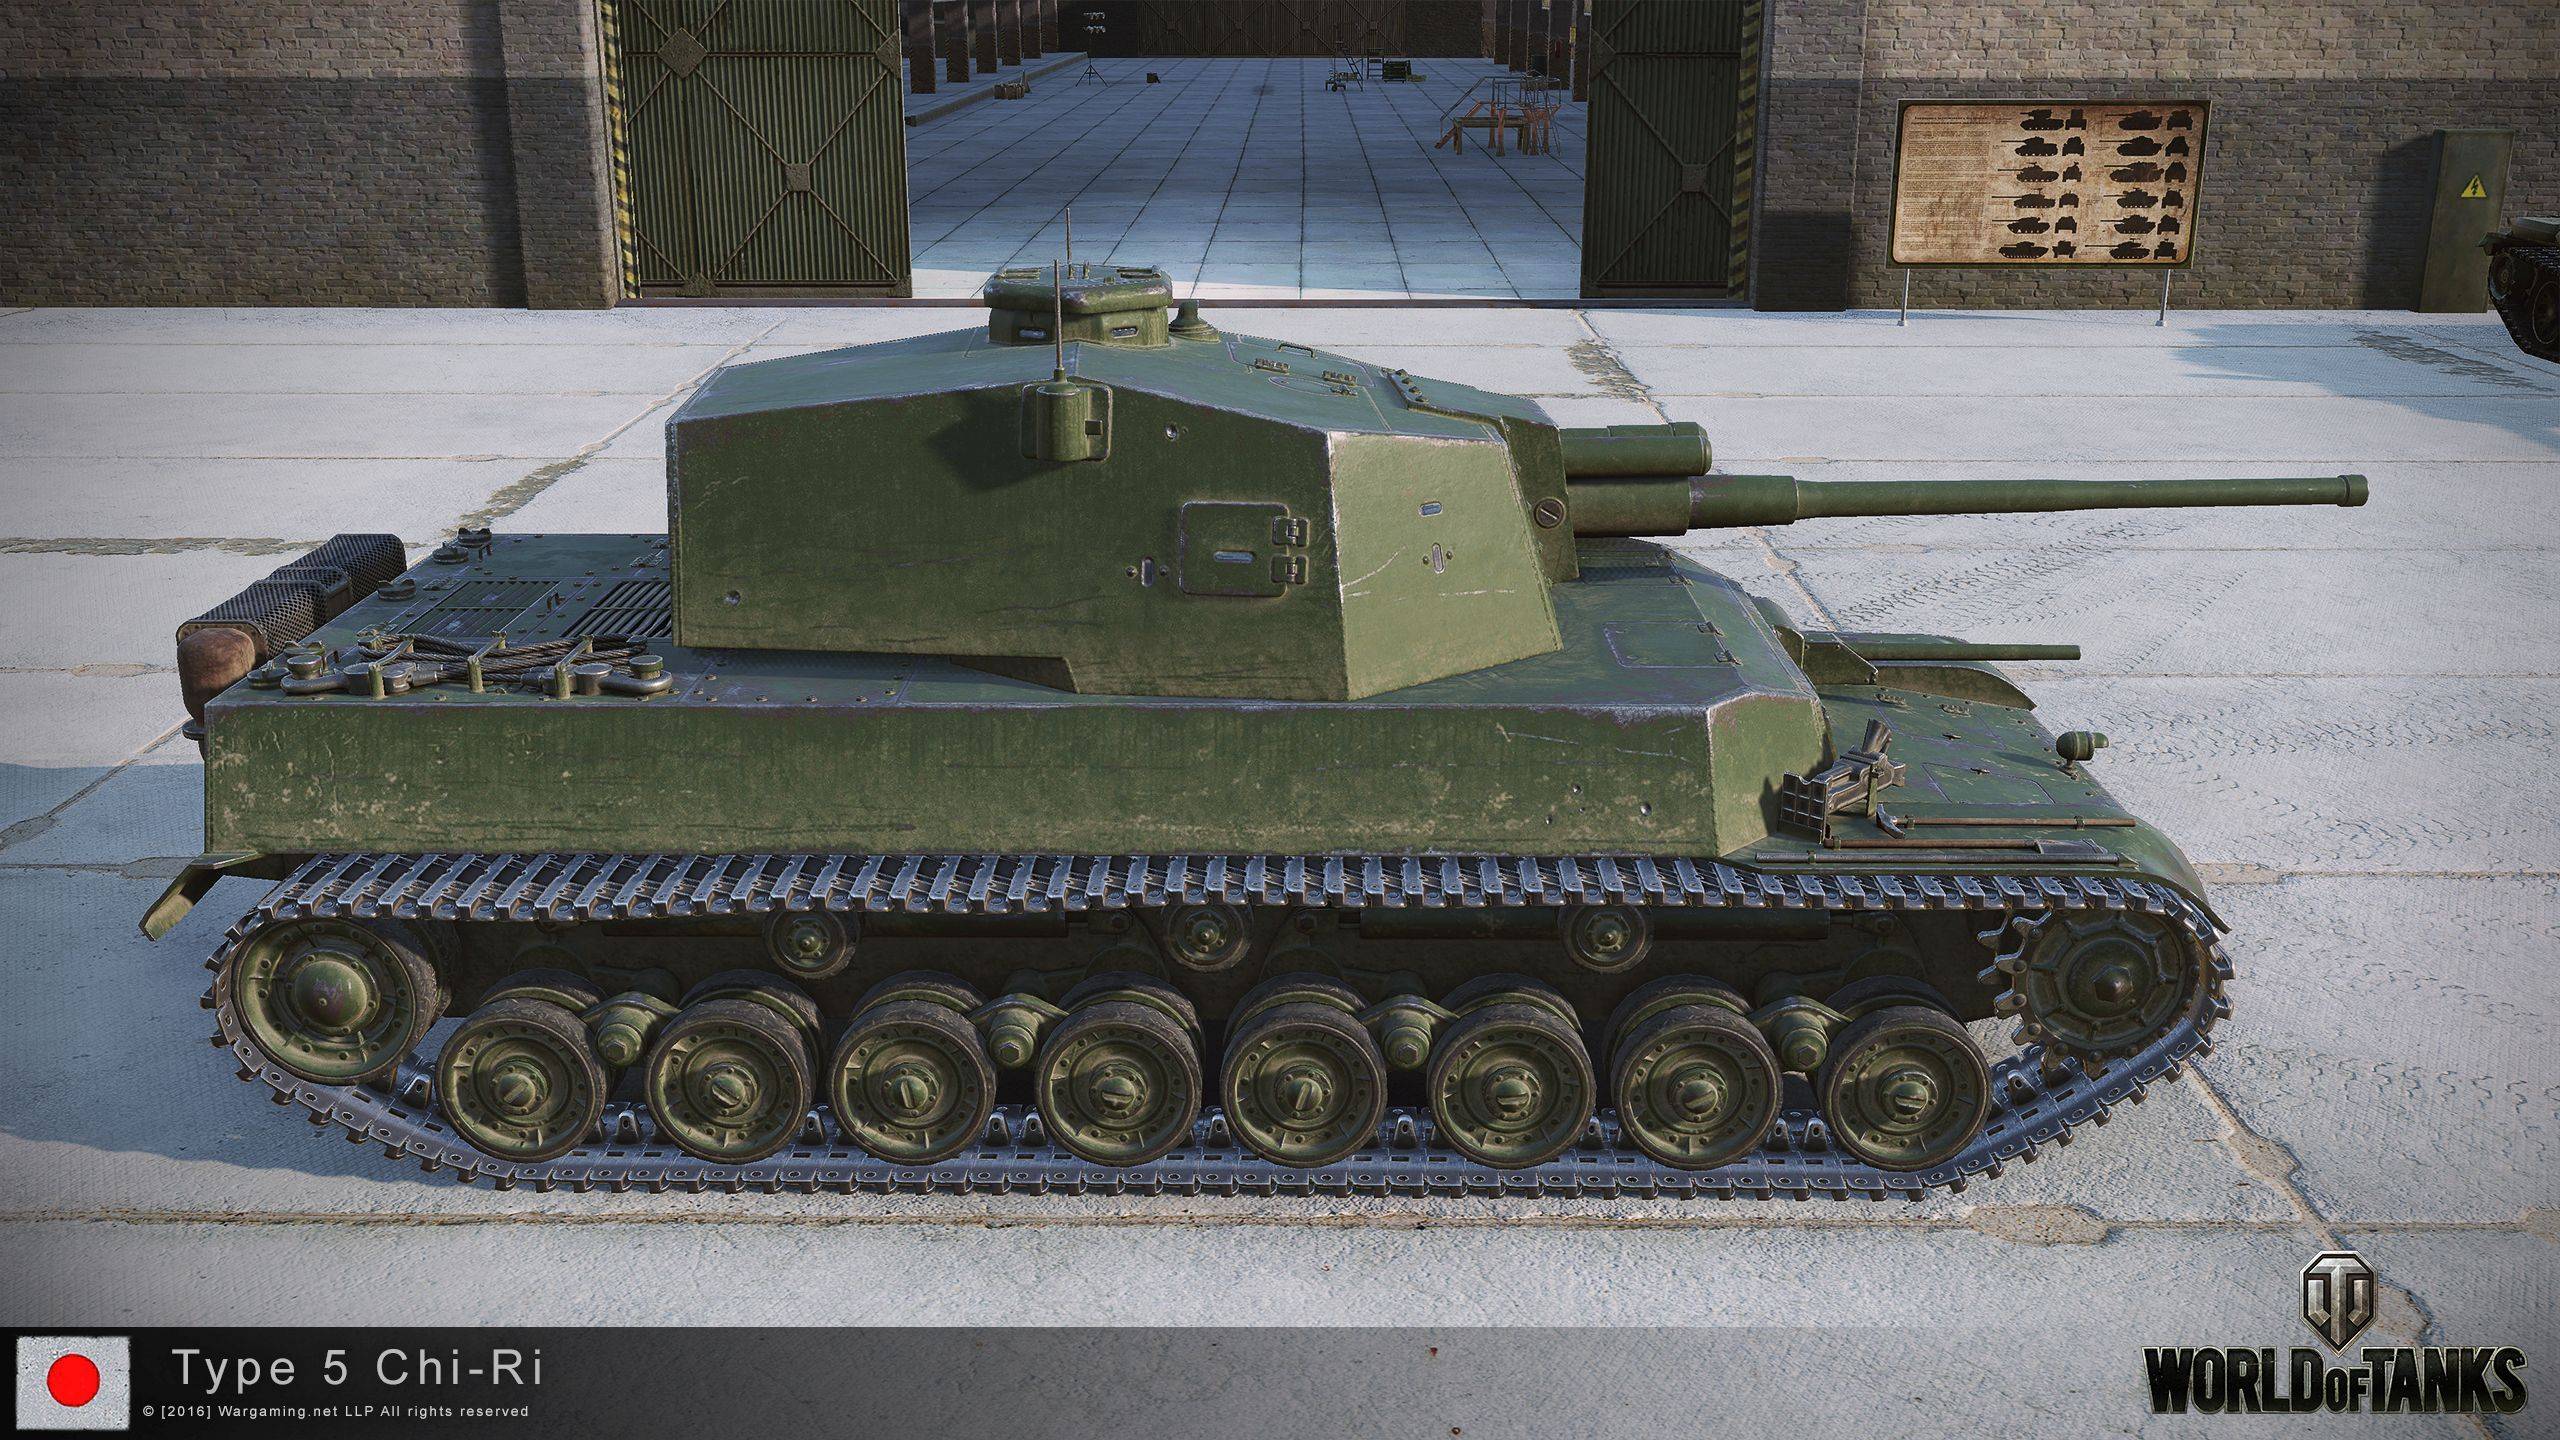 Подробный гайд по японскому среднему танку 7 уровня type 5 chi-ri wot. ведение боя, обзор плюсов и минусов